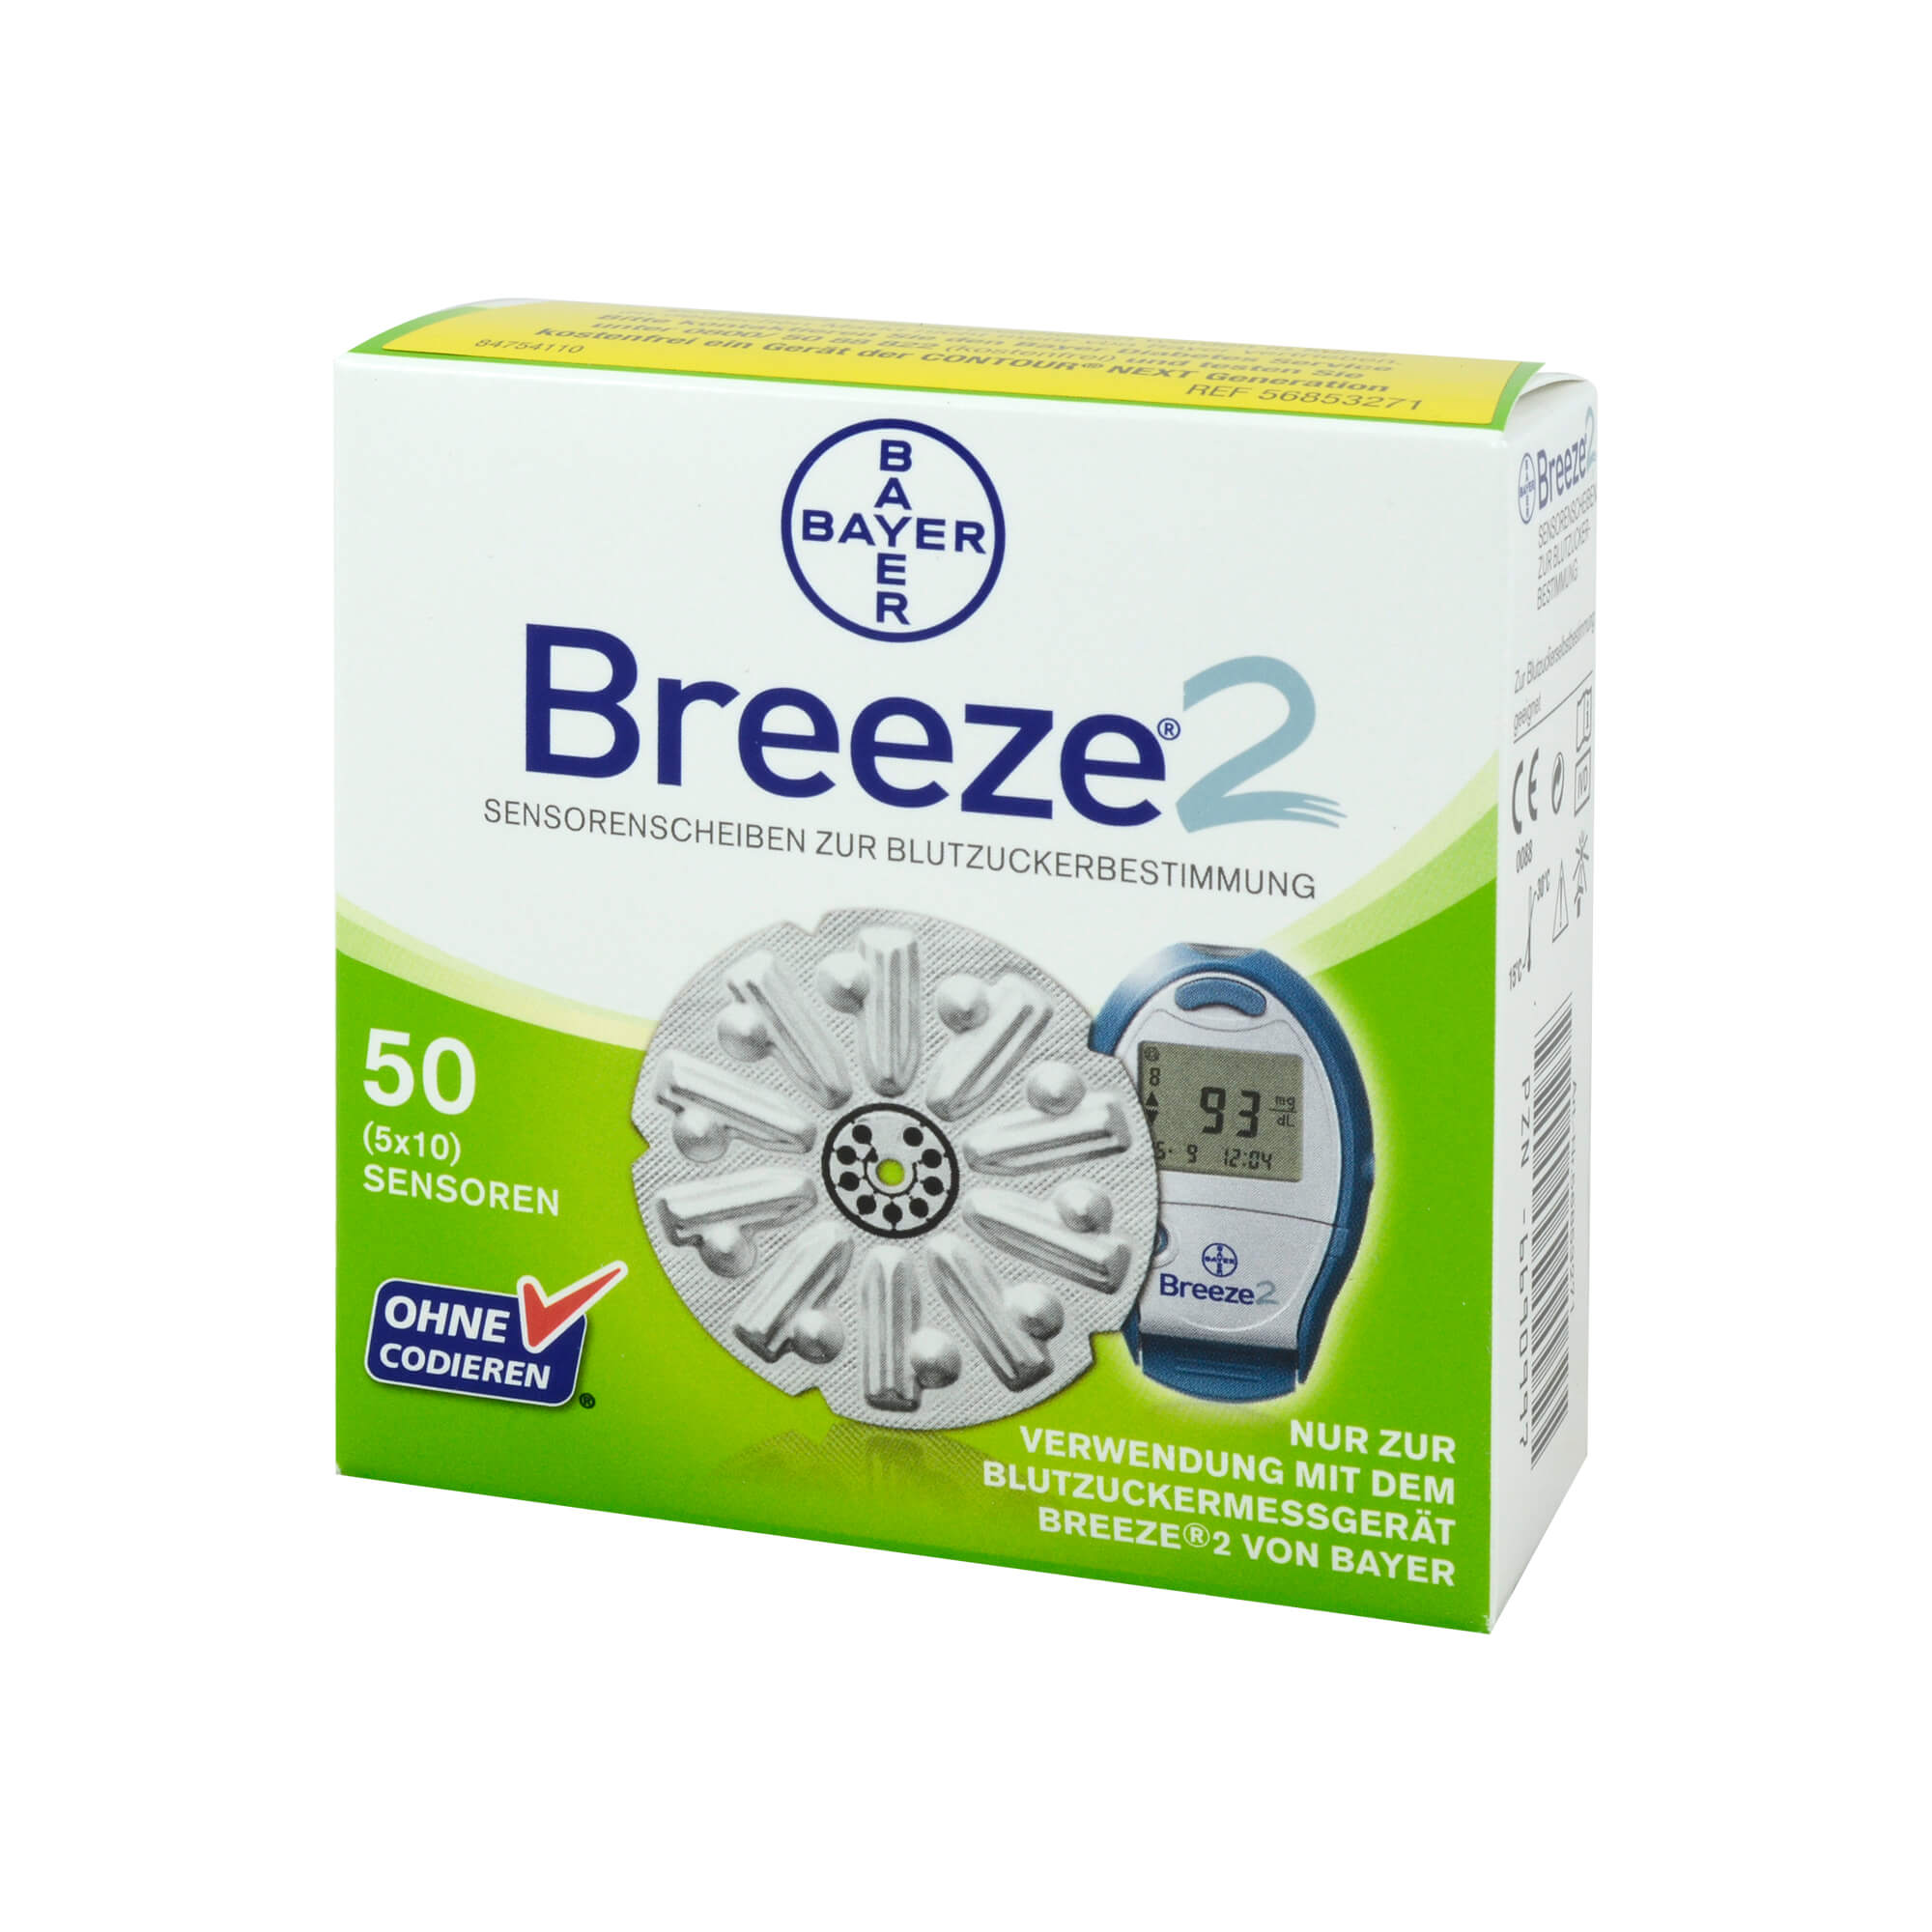 zur Verwendung mit dem Blutzuckermessgerät Breeze 2 von Bayer.